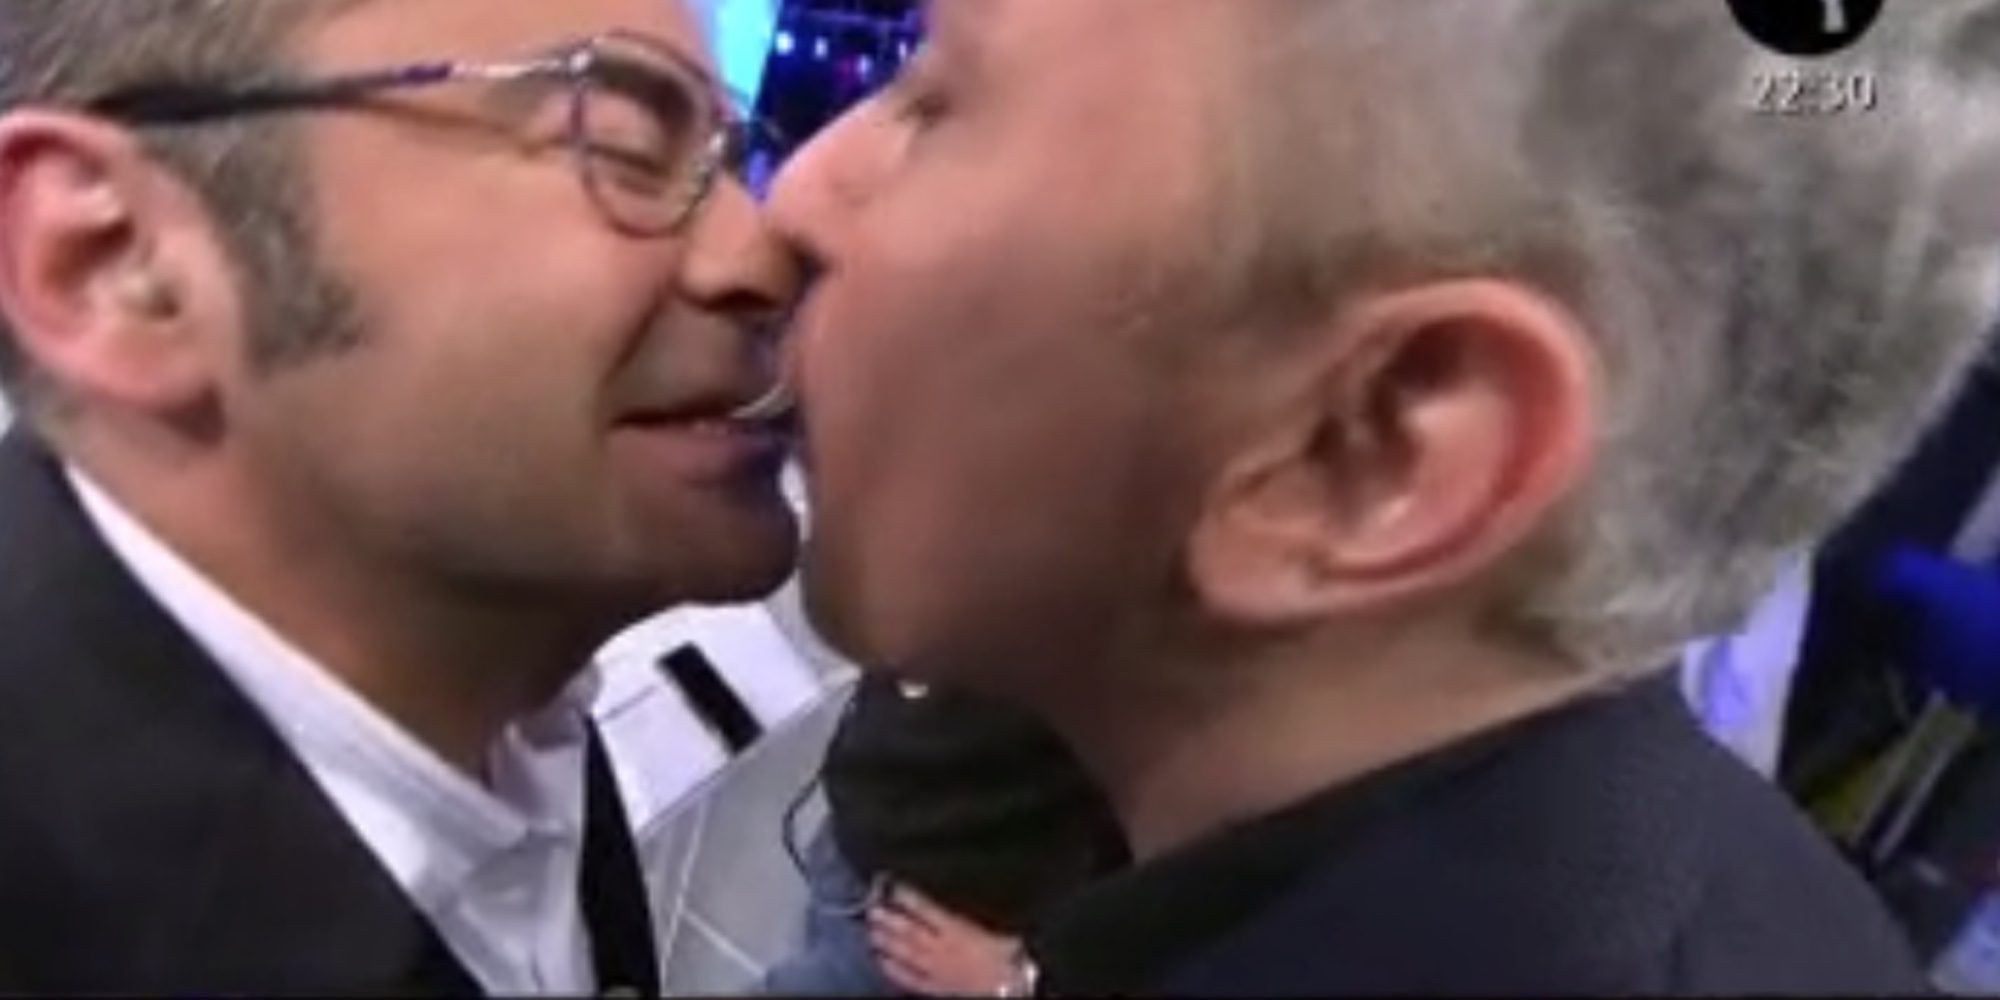 Jorge Javier Vázquez casi besa a Kiko Hernández al ofrecerle una patata con la boca